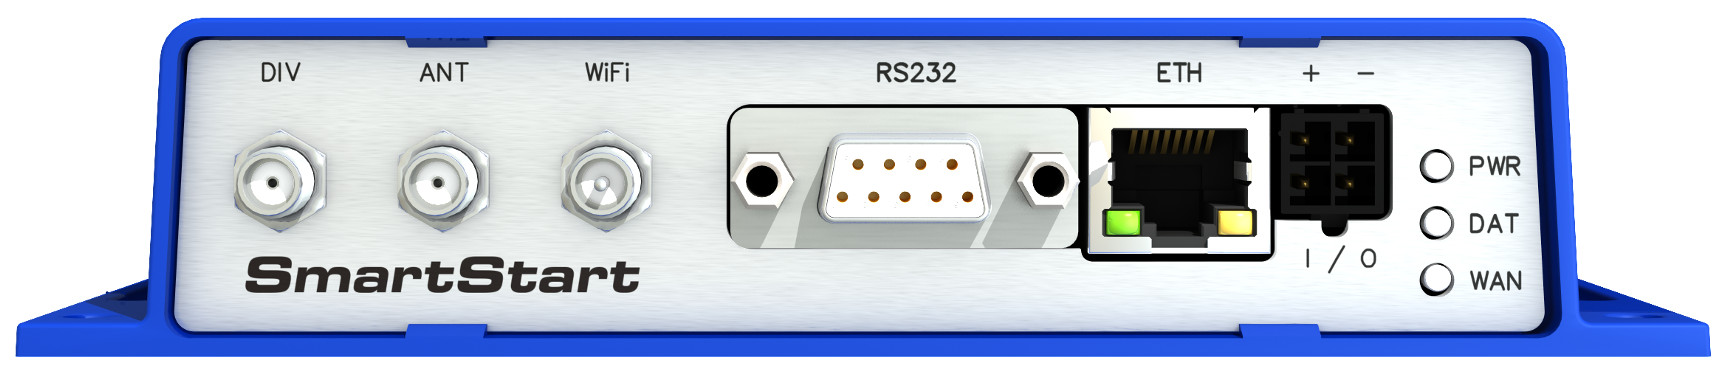 5.7 Popis zadního panelu Na zadním panelu jsou k dispozici dvě čtečky SIM karet (SIM1, SIM2) a tlačítko RST pro obnovení výchozí konfigurace a následný restart routeru. 5.